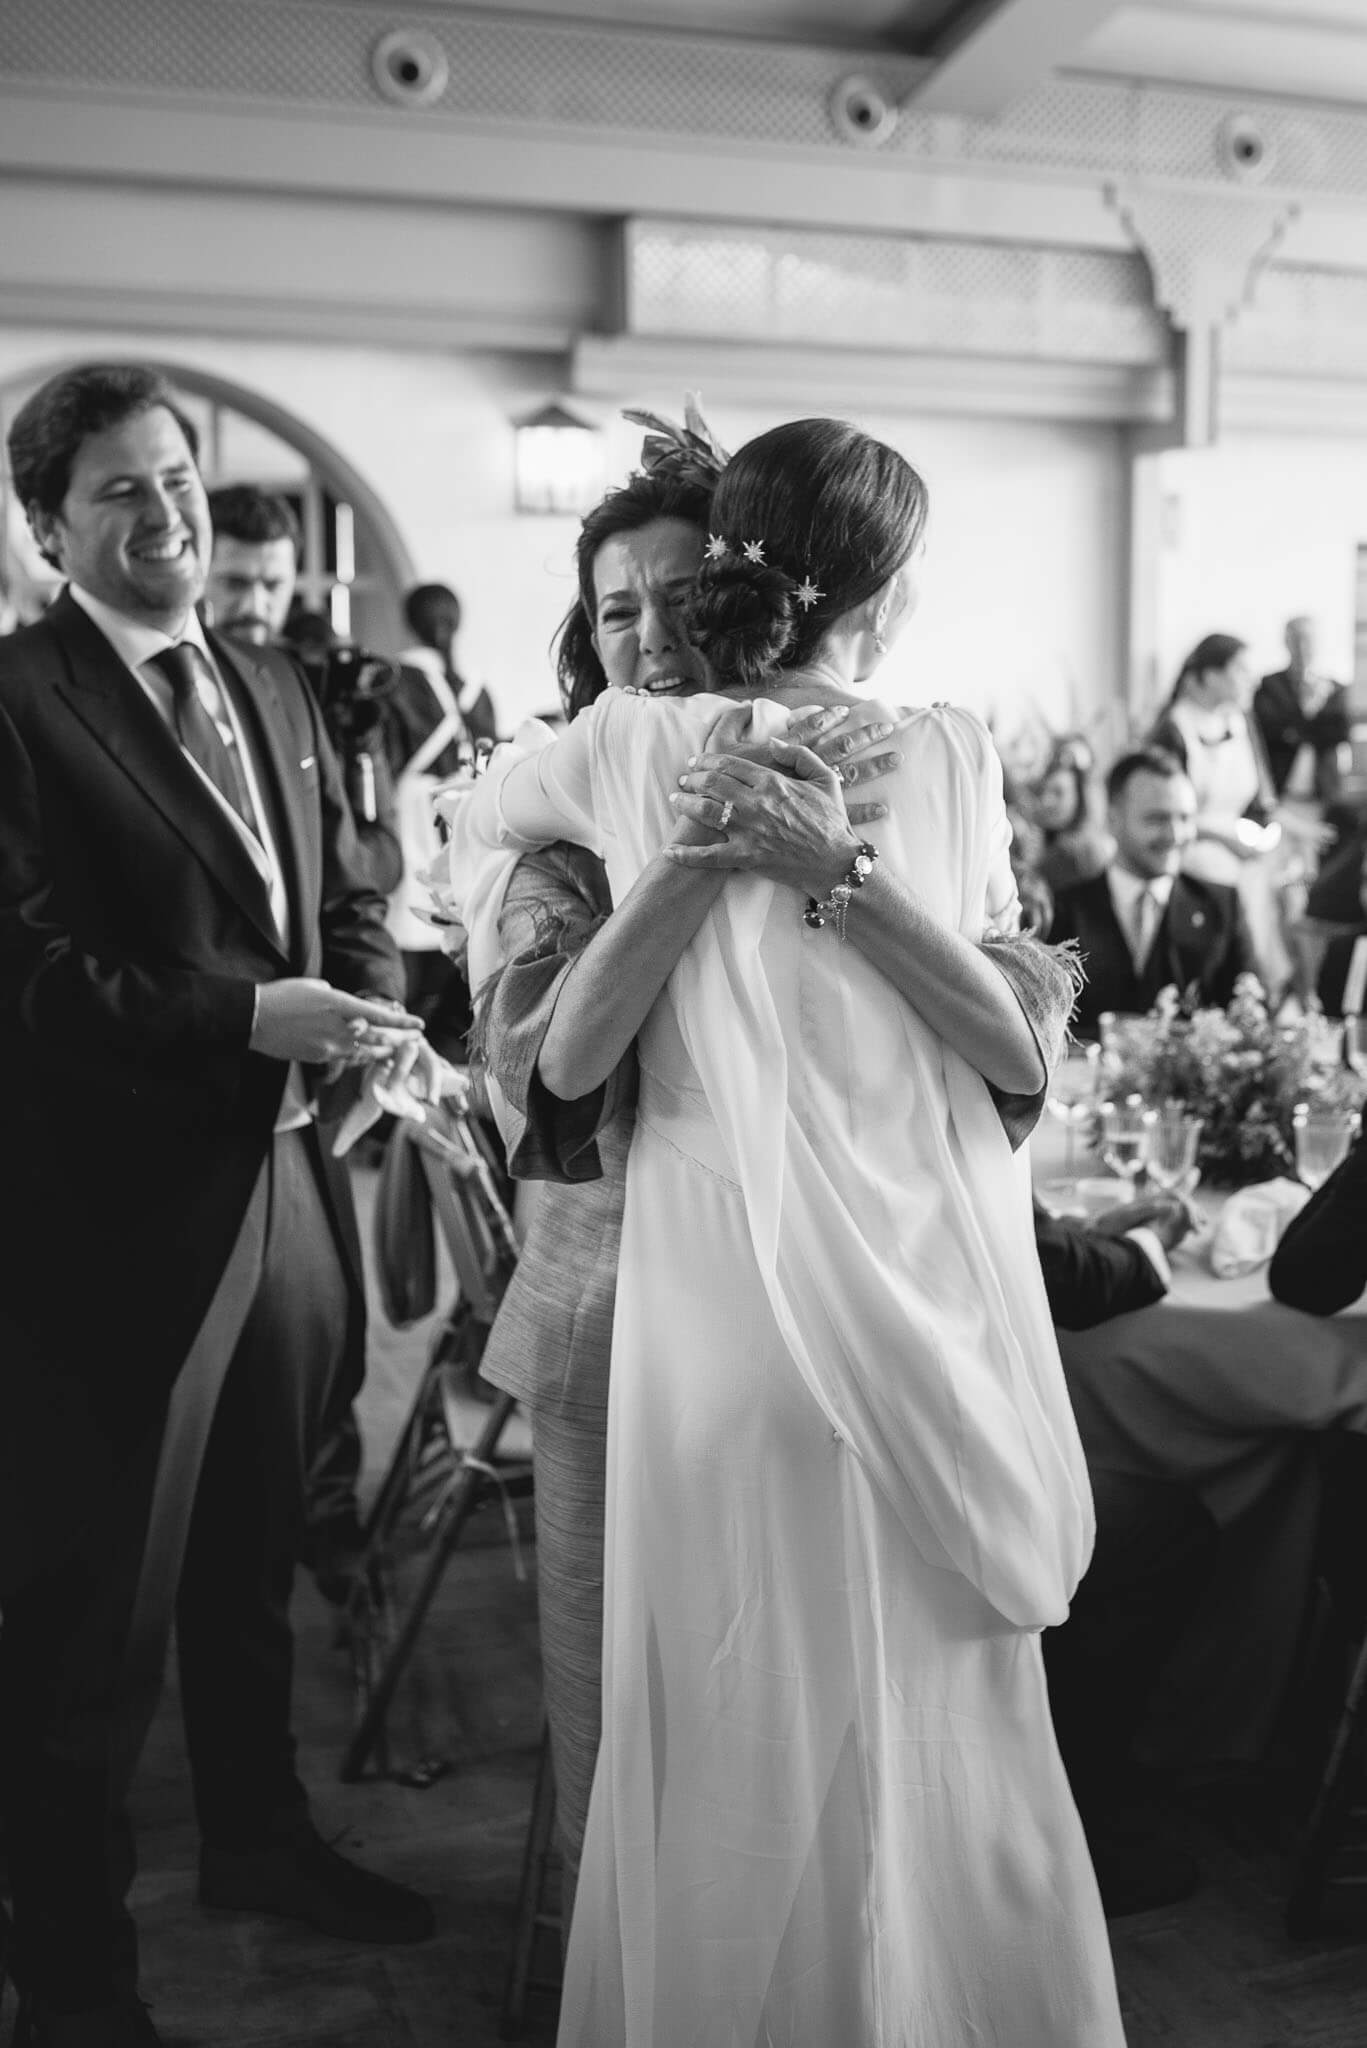 Madre llora mientras abraza a su hija vestida de novia en el convite de la boda (Foto en color)